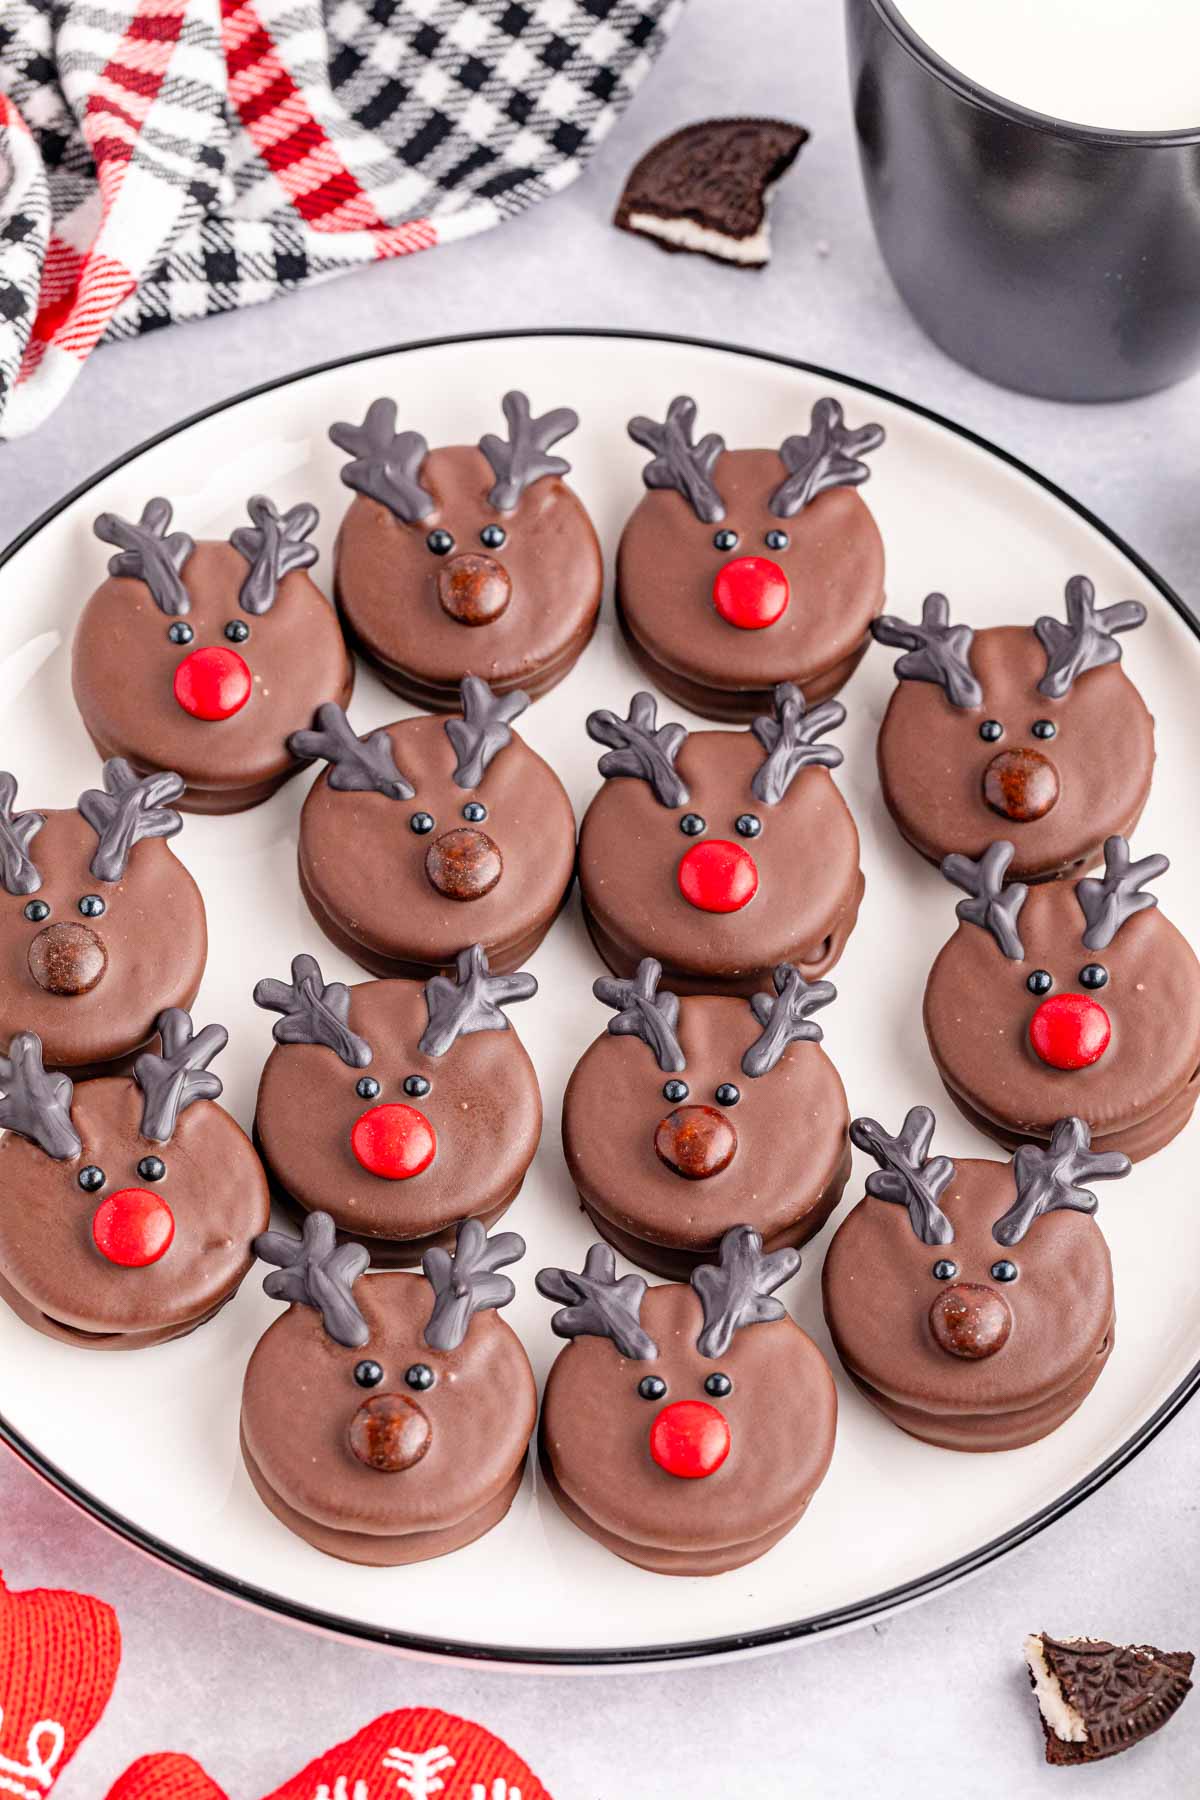 Chocolate reindeer cookies on a plate.